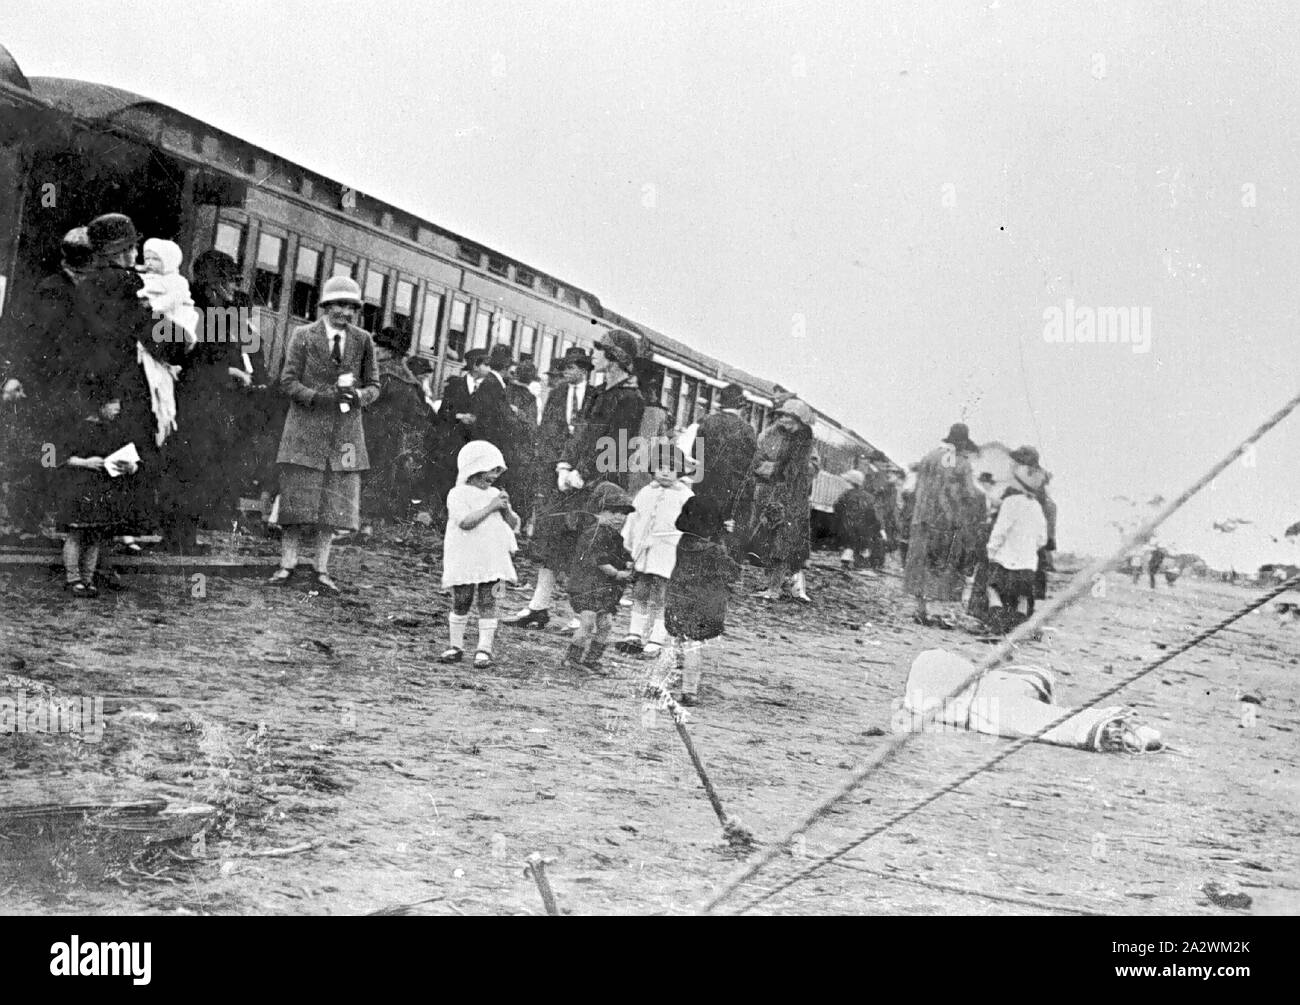 Negativo - Grupo inspeccionando 'Agricultura mejor tren", Underbool,  Victoria, 1927, un grupo predominantemente femenina, junto a los vagones de  ferrocarril. Este fue el "mejor tren agrícola". Las mujeres vistiendo  faldas y chaquetas